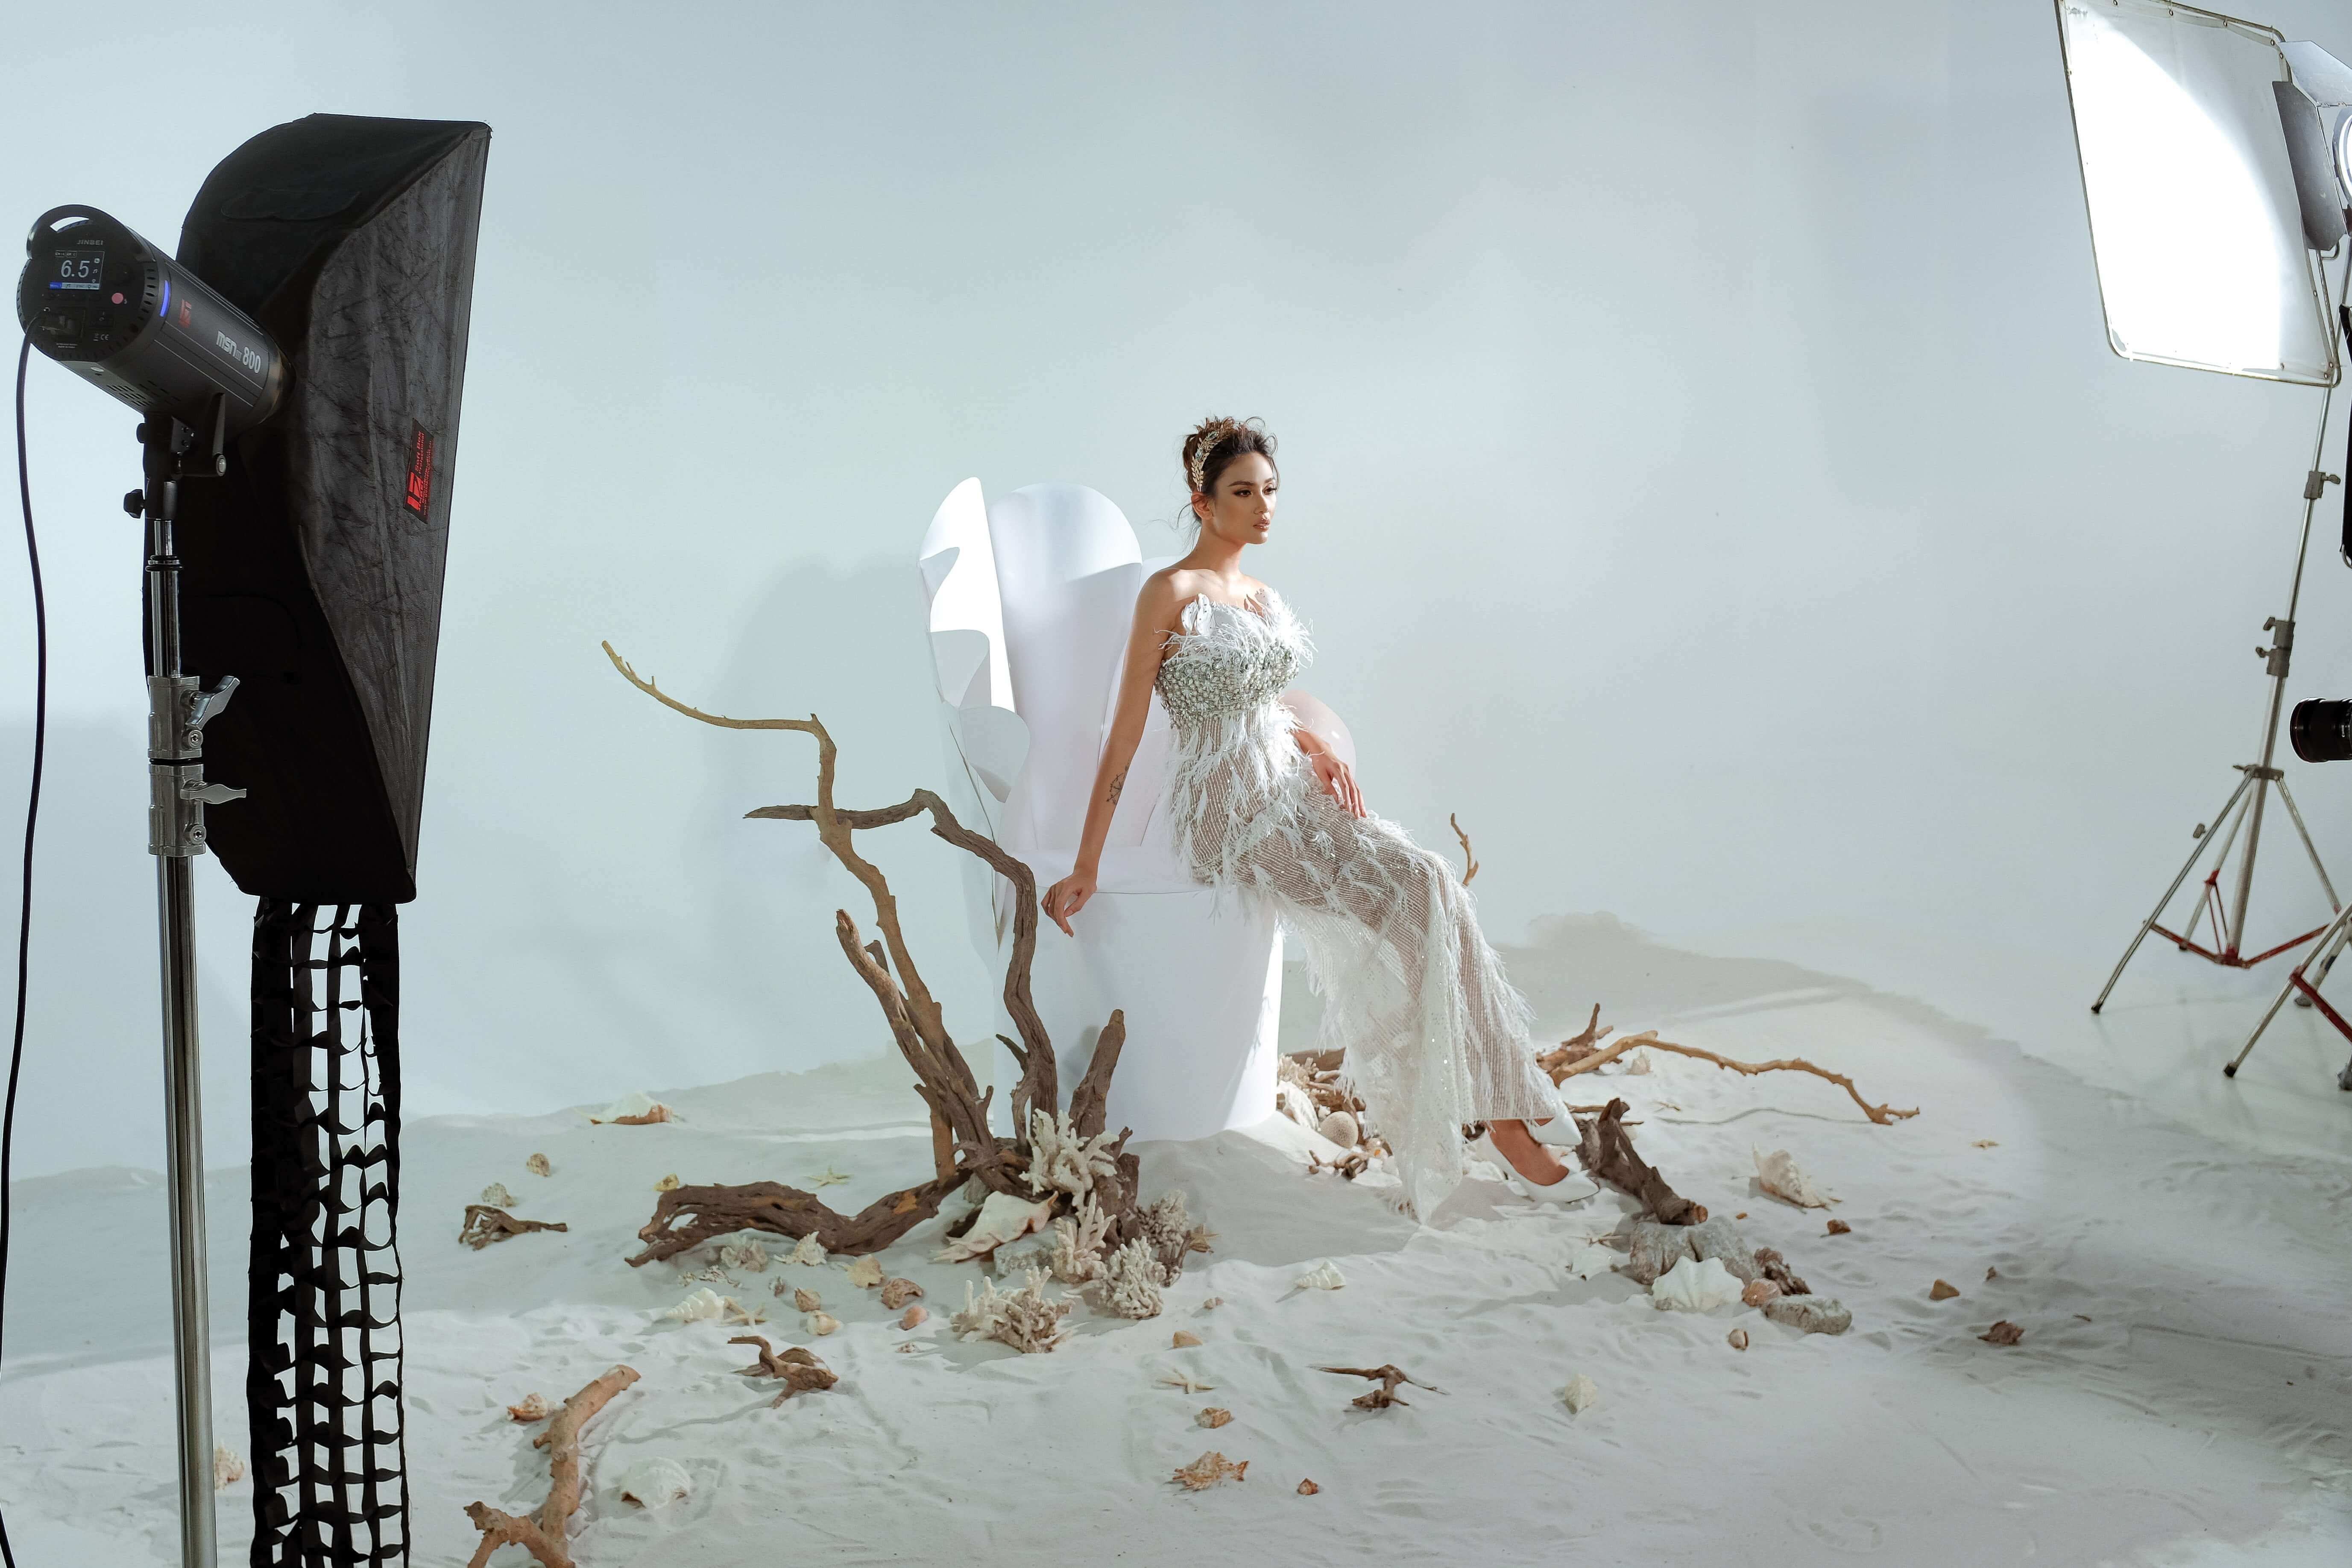 Hậu trường chụp ảnh: Những hình ảnh đầu tiên của bộ sưu tập váy cưới độc quyền cùng siêu mẫu Võ Hoàng Yến Marry